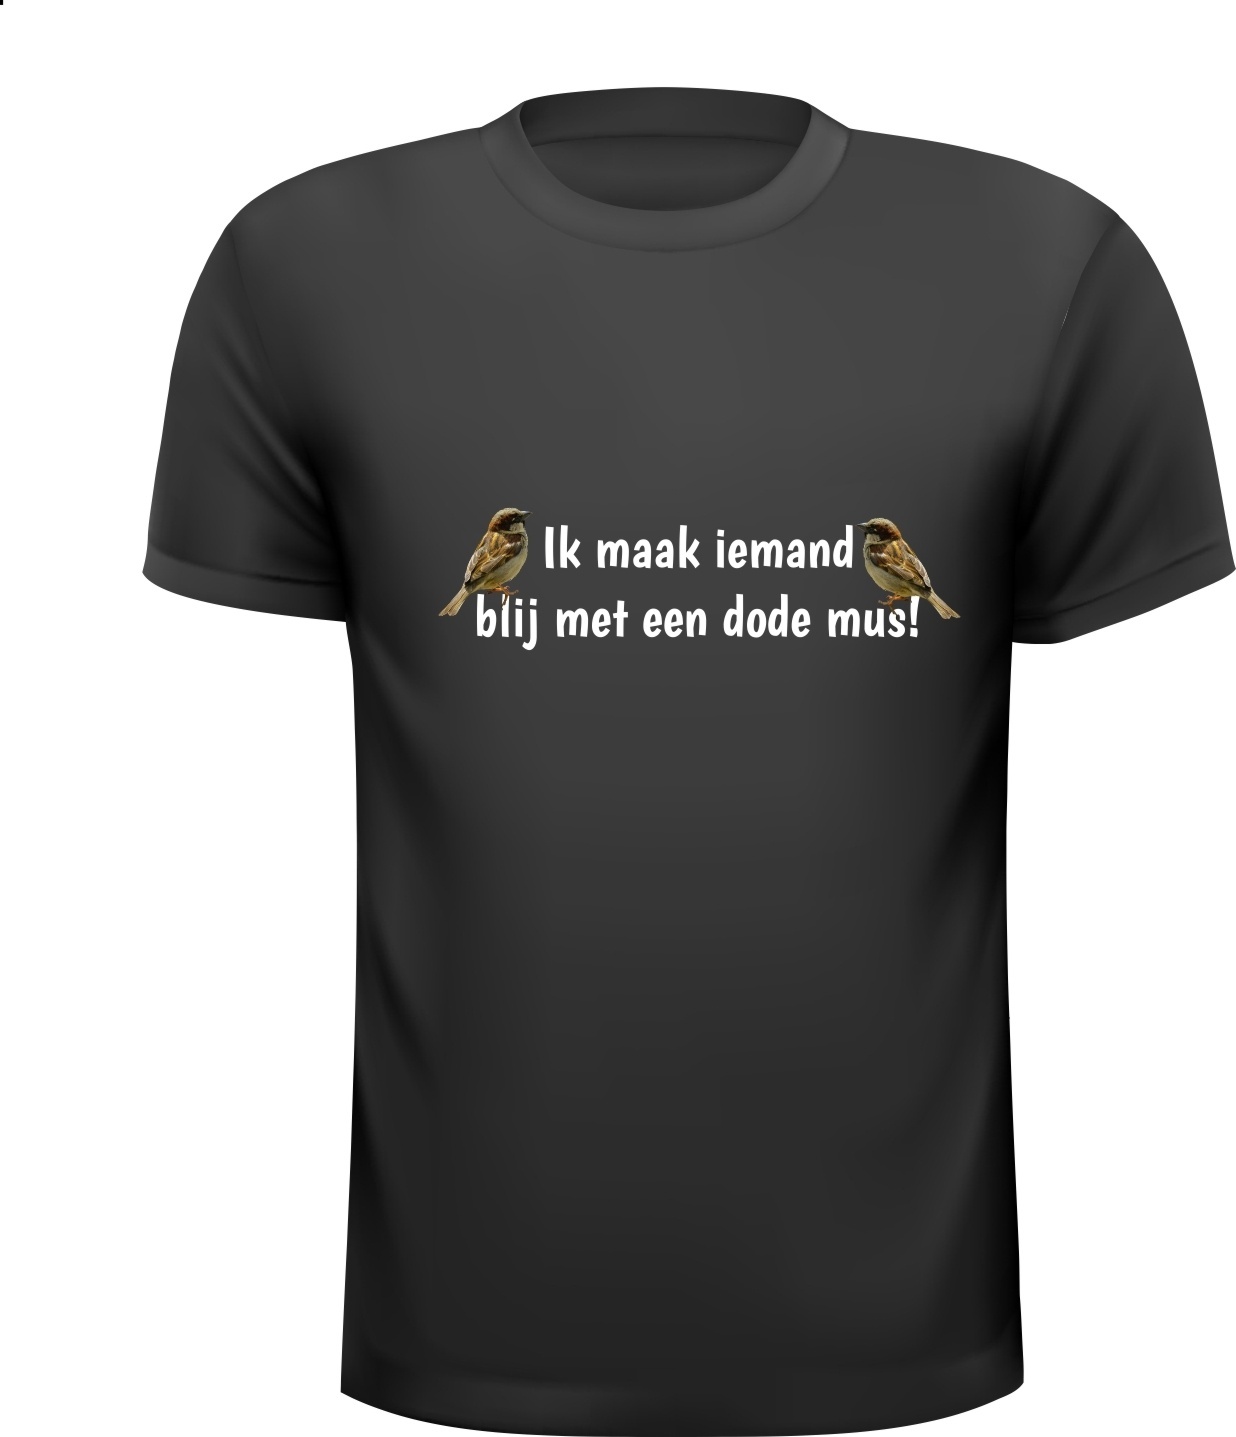 Grappig T-shirt met het spreekwoord Ik maak iemand blij met een dode mus